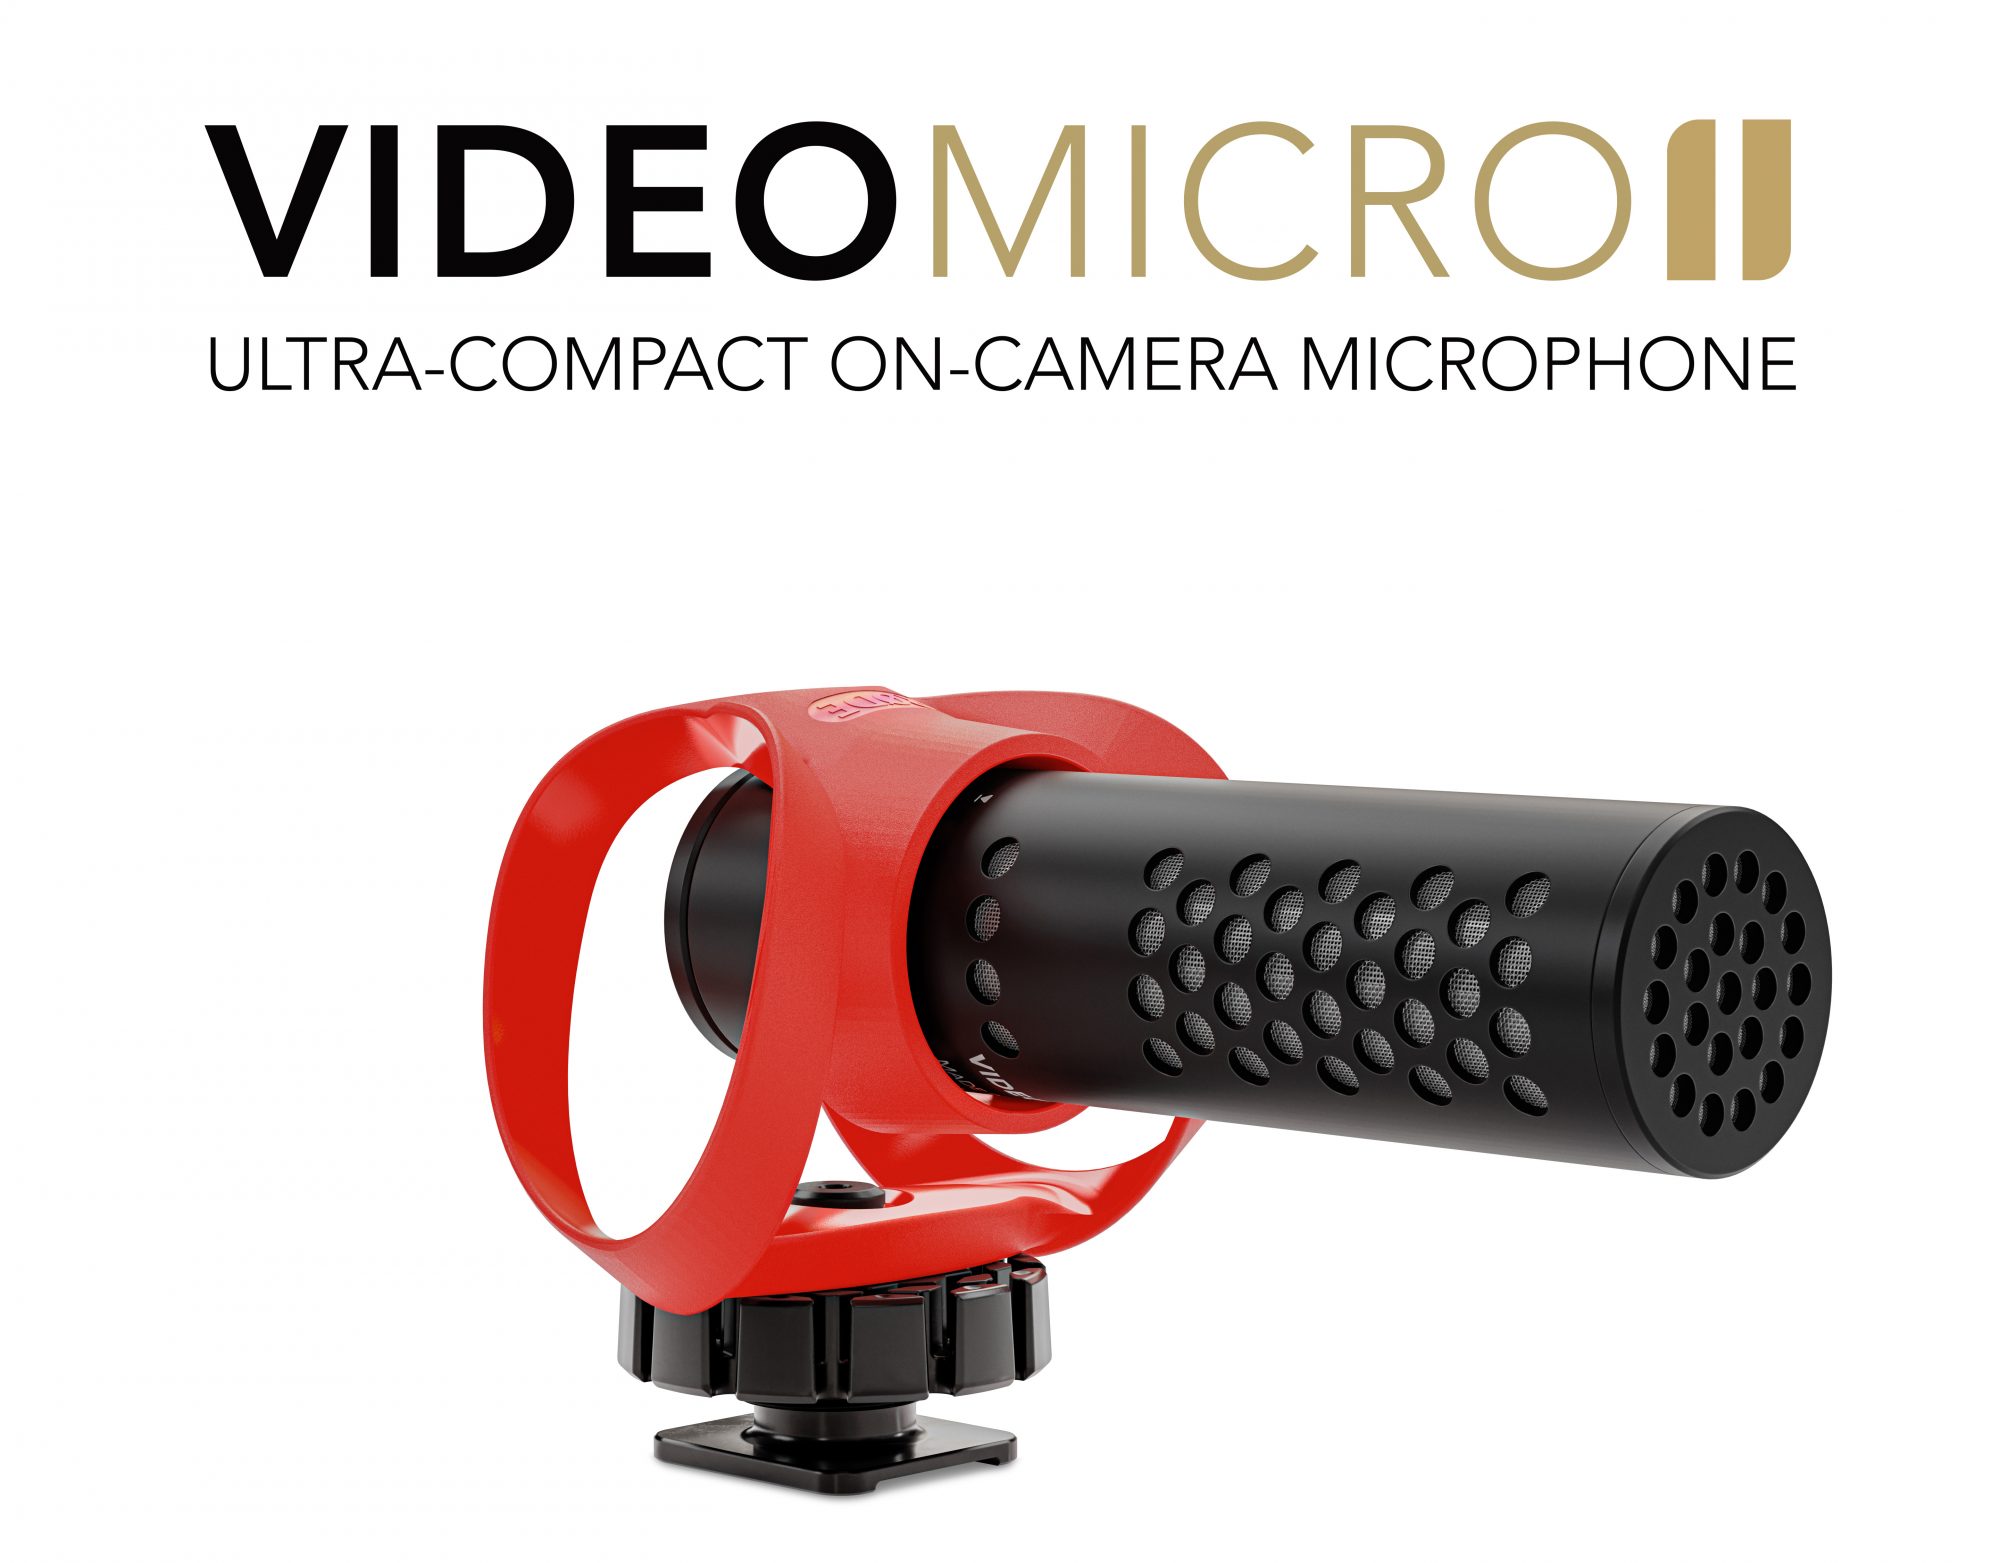 銀一、RODE「ビデオマイクロII」を発表 小型・軽量オンカメラ